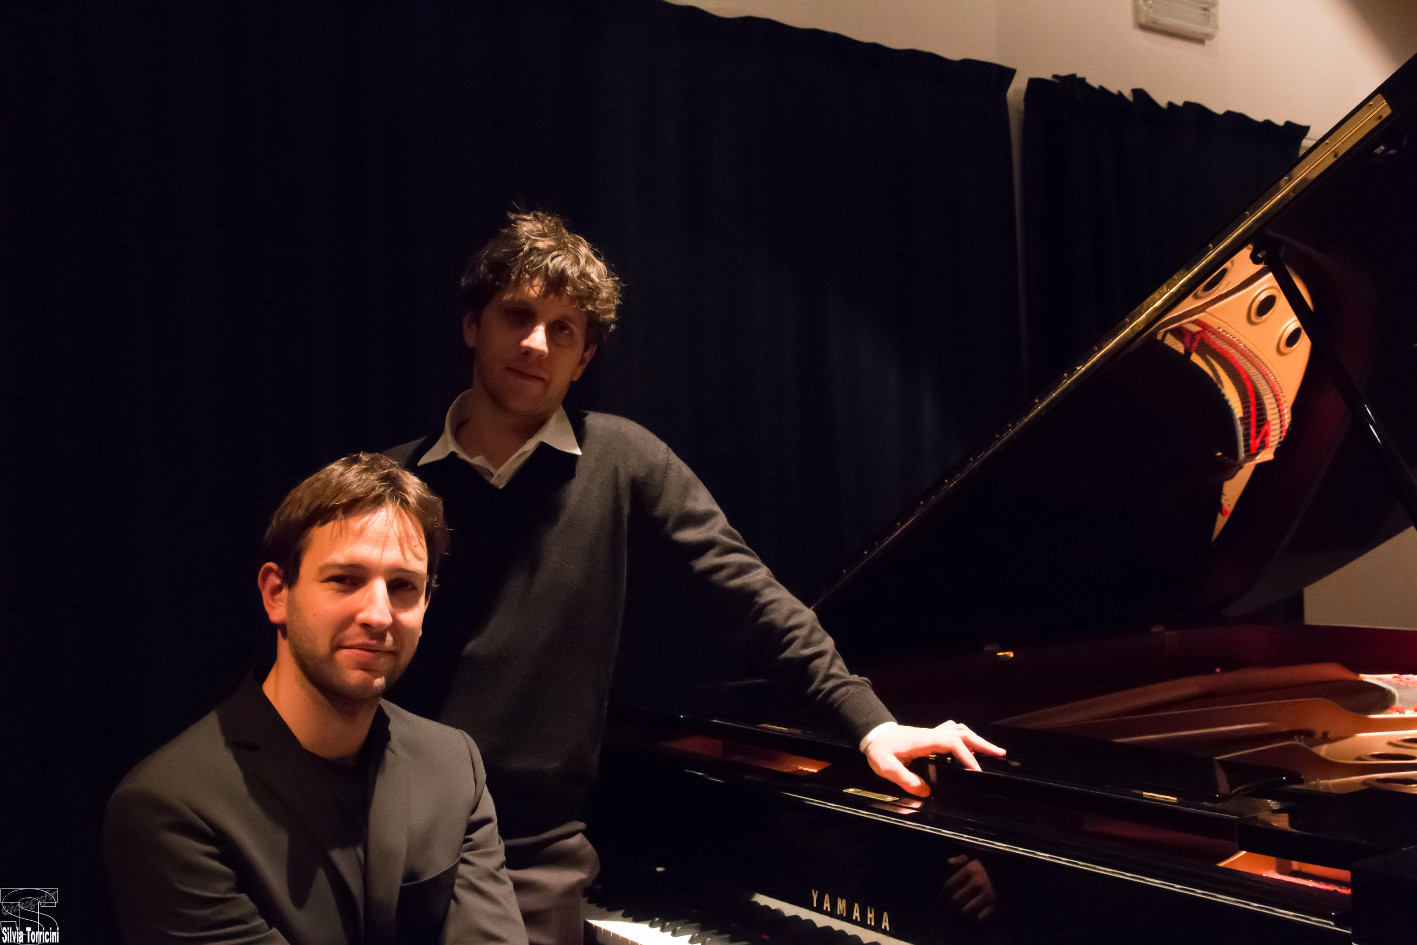 Musicians Giovanni Nesi and Gregorio Moppi